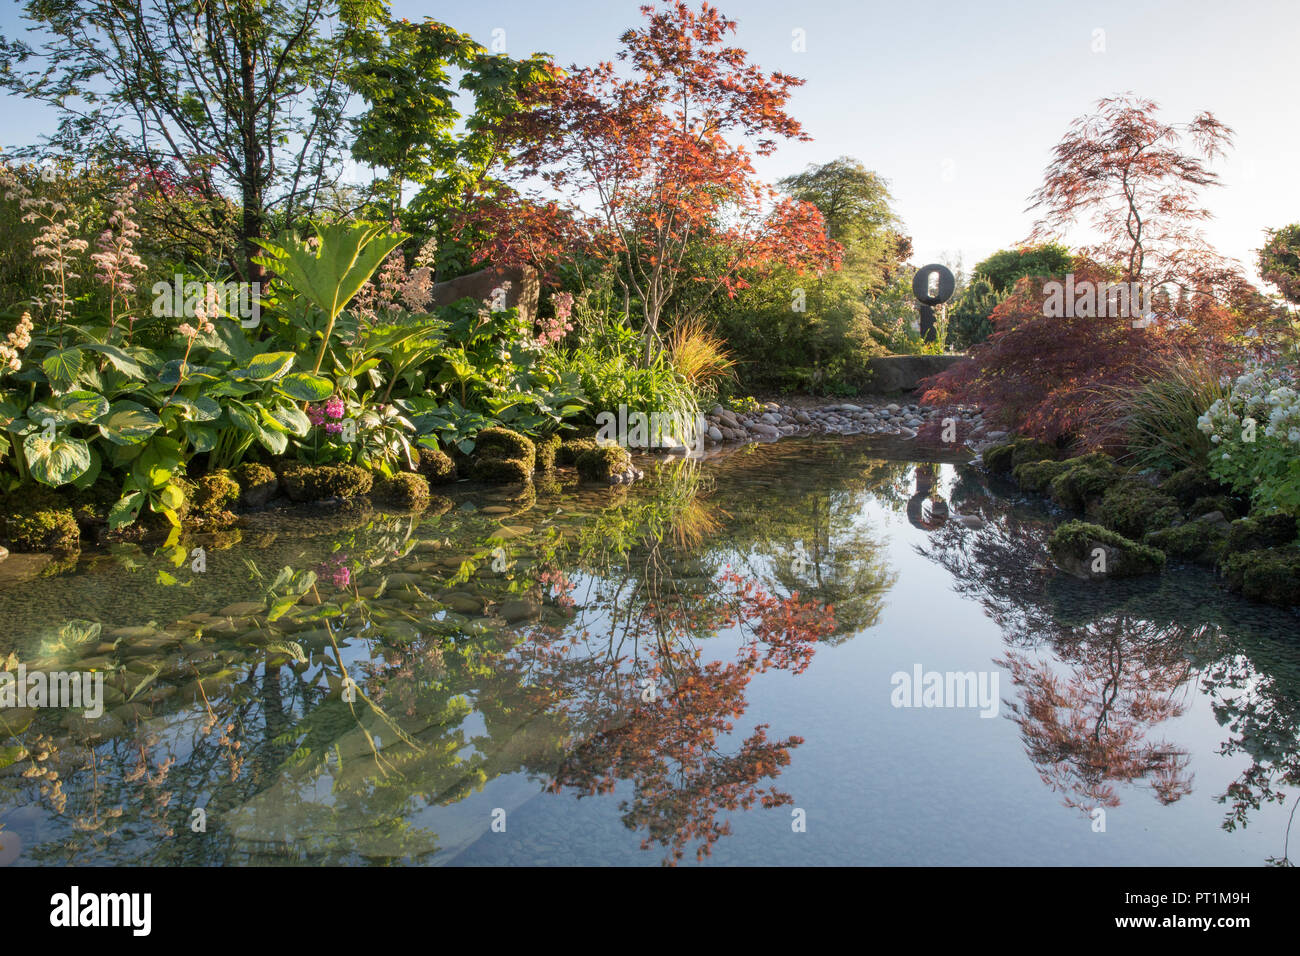 Japanischer Zen-Garten großer Teich Wasserspiel mit moosbedeckten Steinen mit, Gunnera manicata - Rodgersia aesculifolia - Acer palmatum Bäume - UK Stockfoto